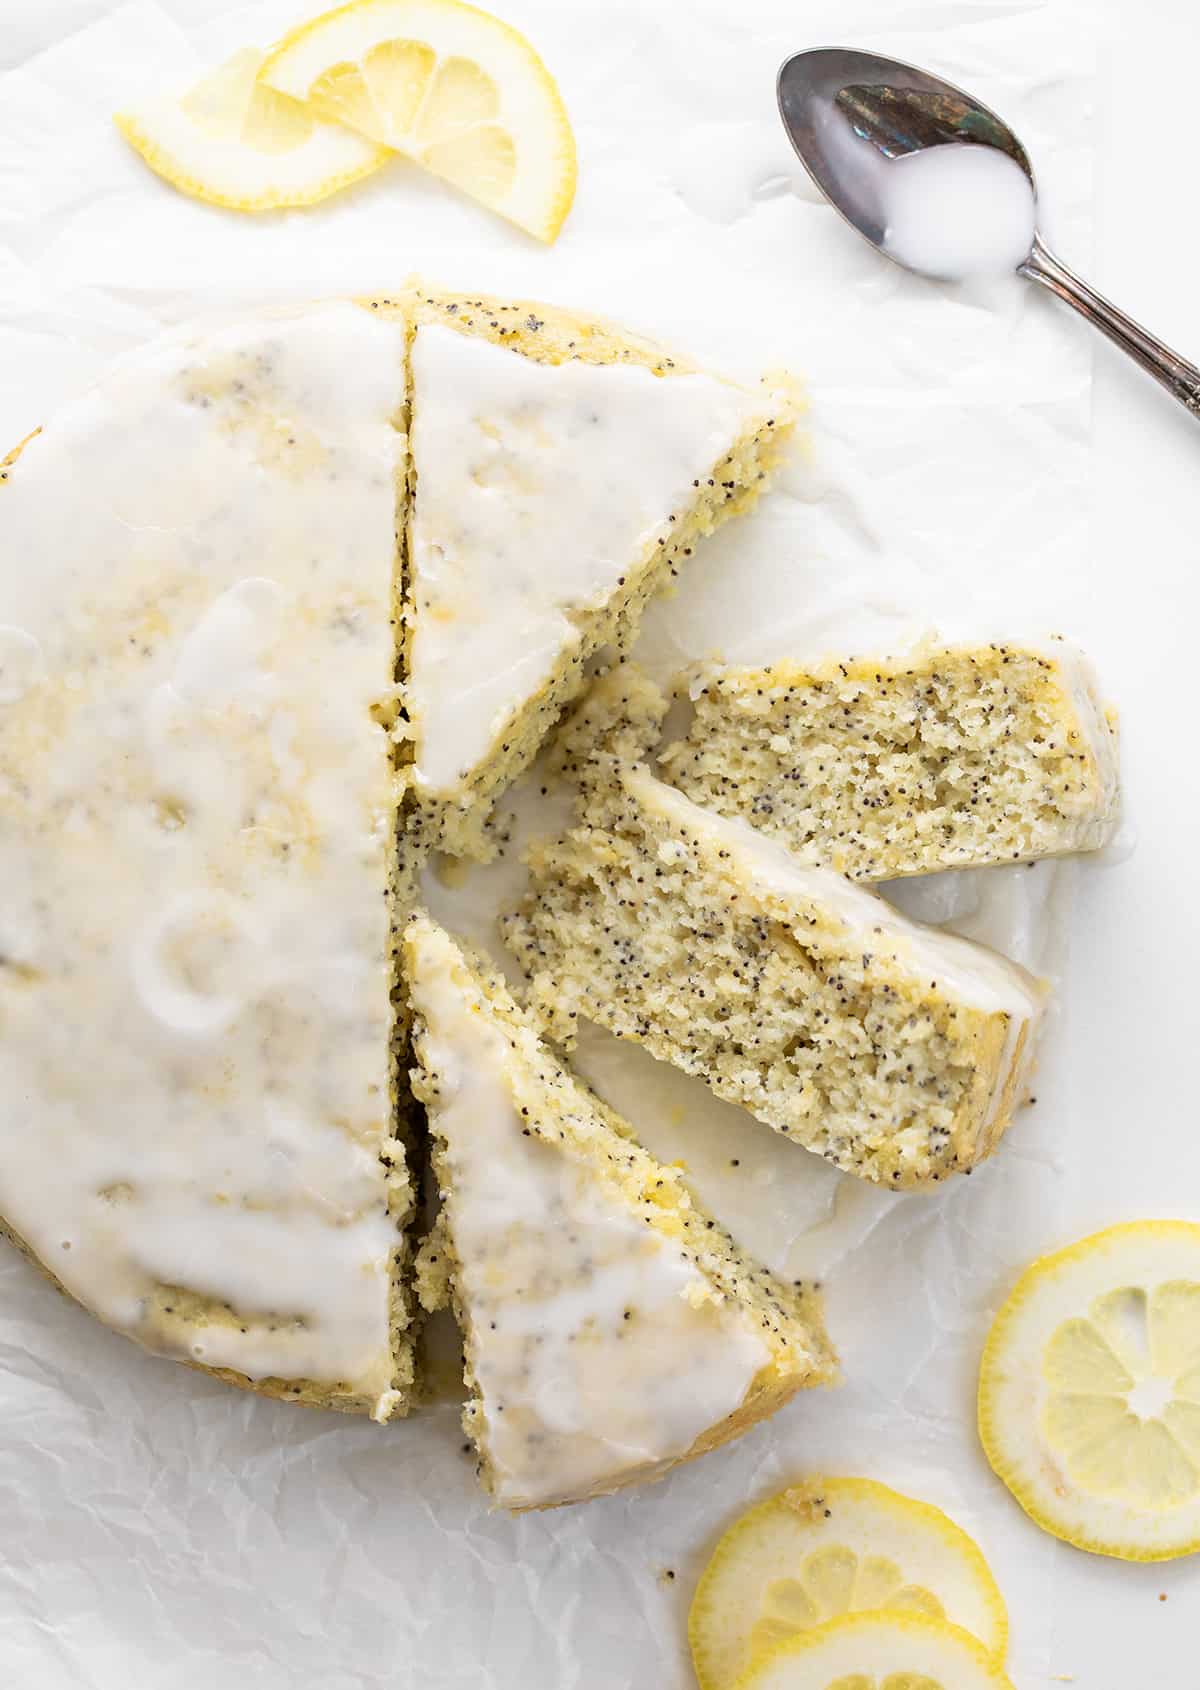 整个柠檬罂粟籽蛋糕一块白色的羊皮纸上四块,两块显示温柔的碎屑。